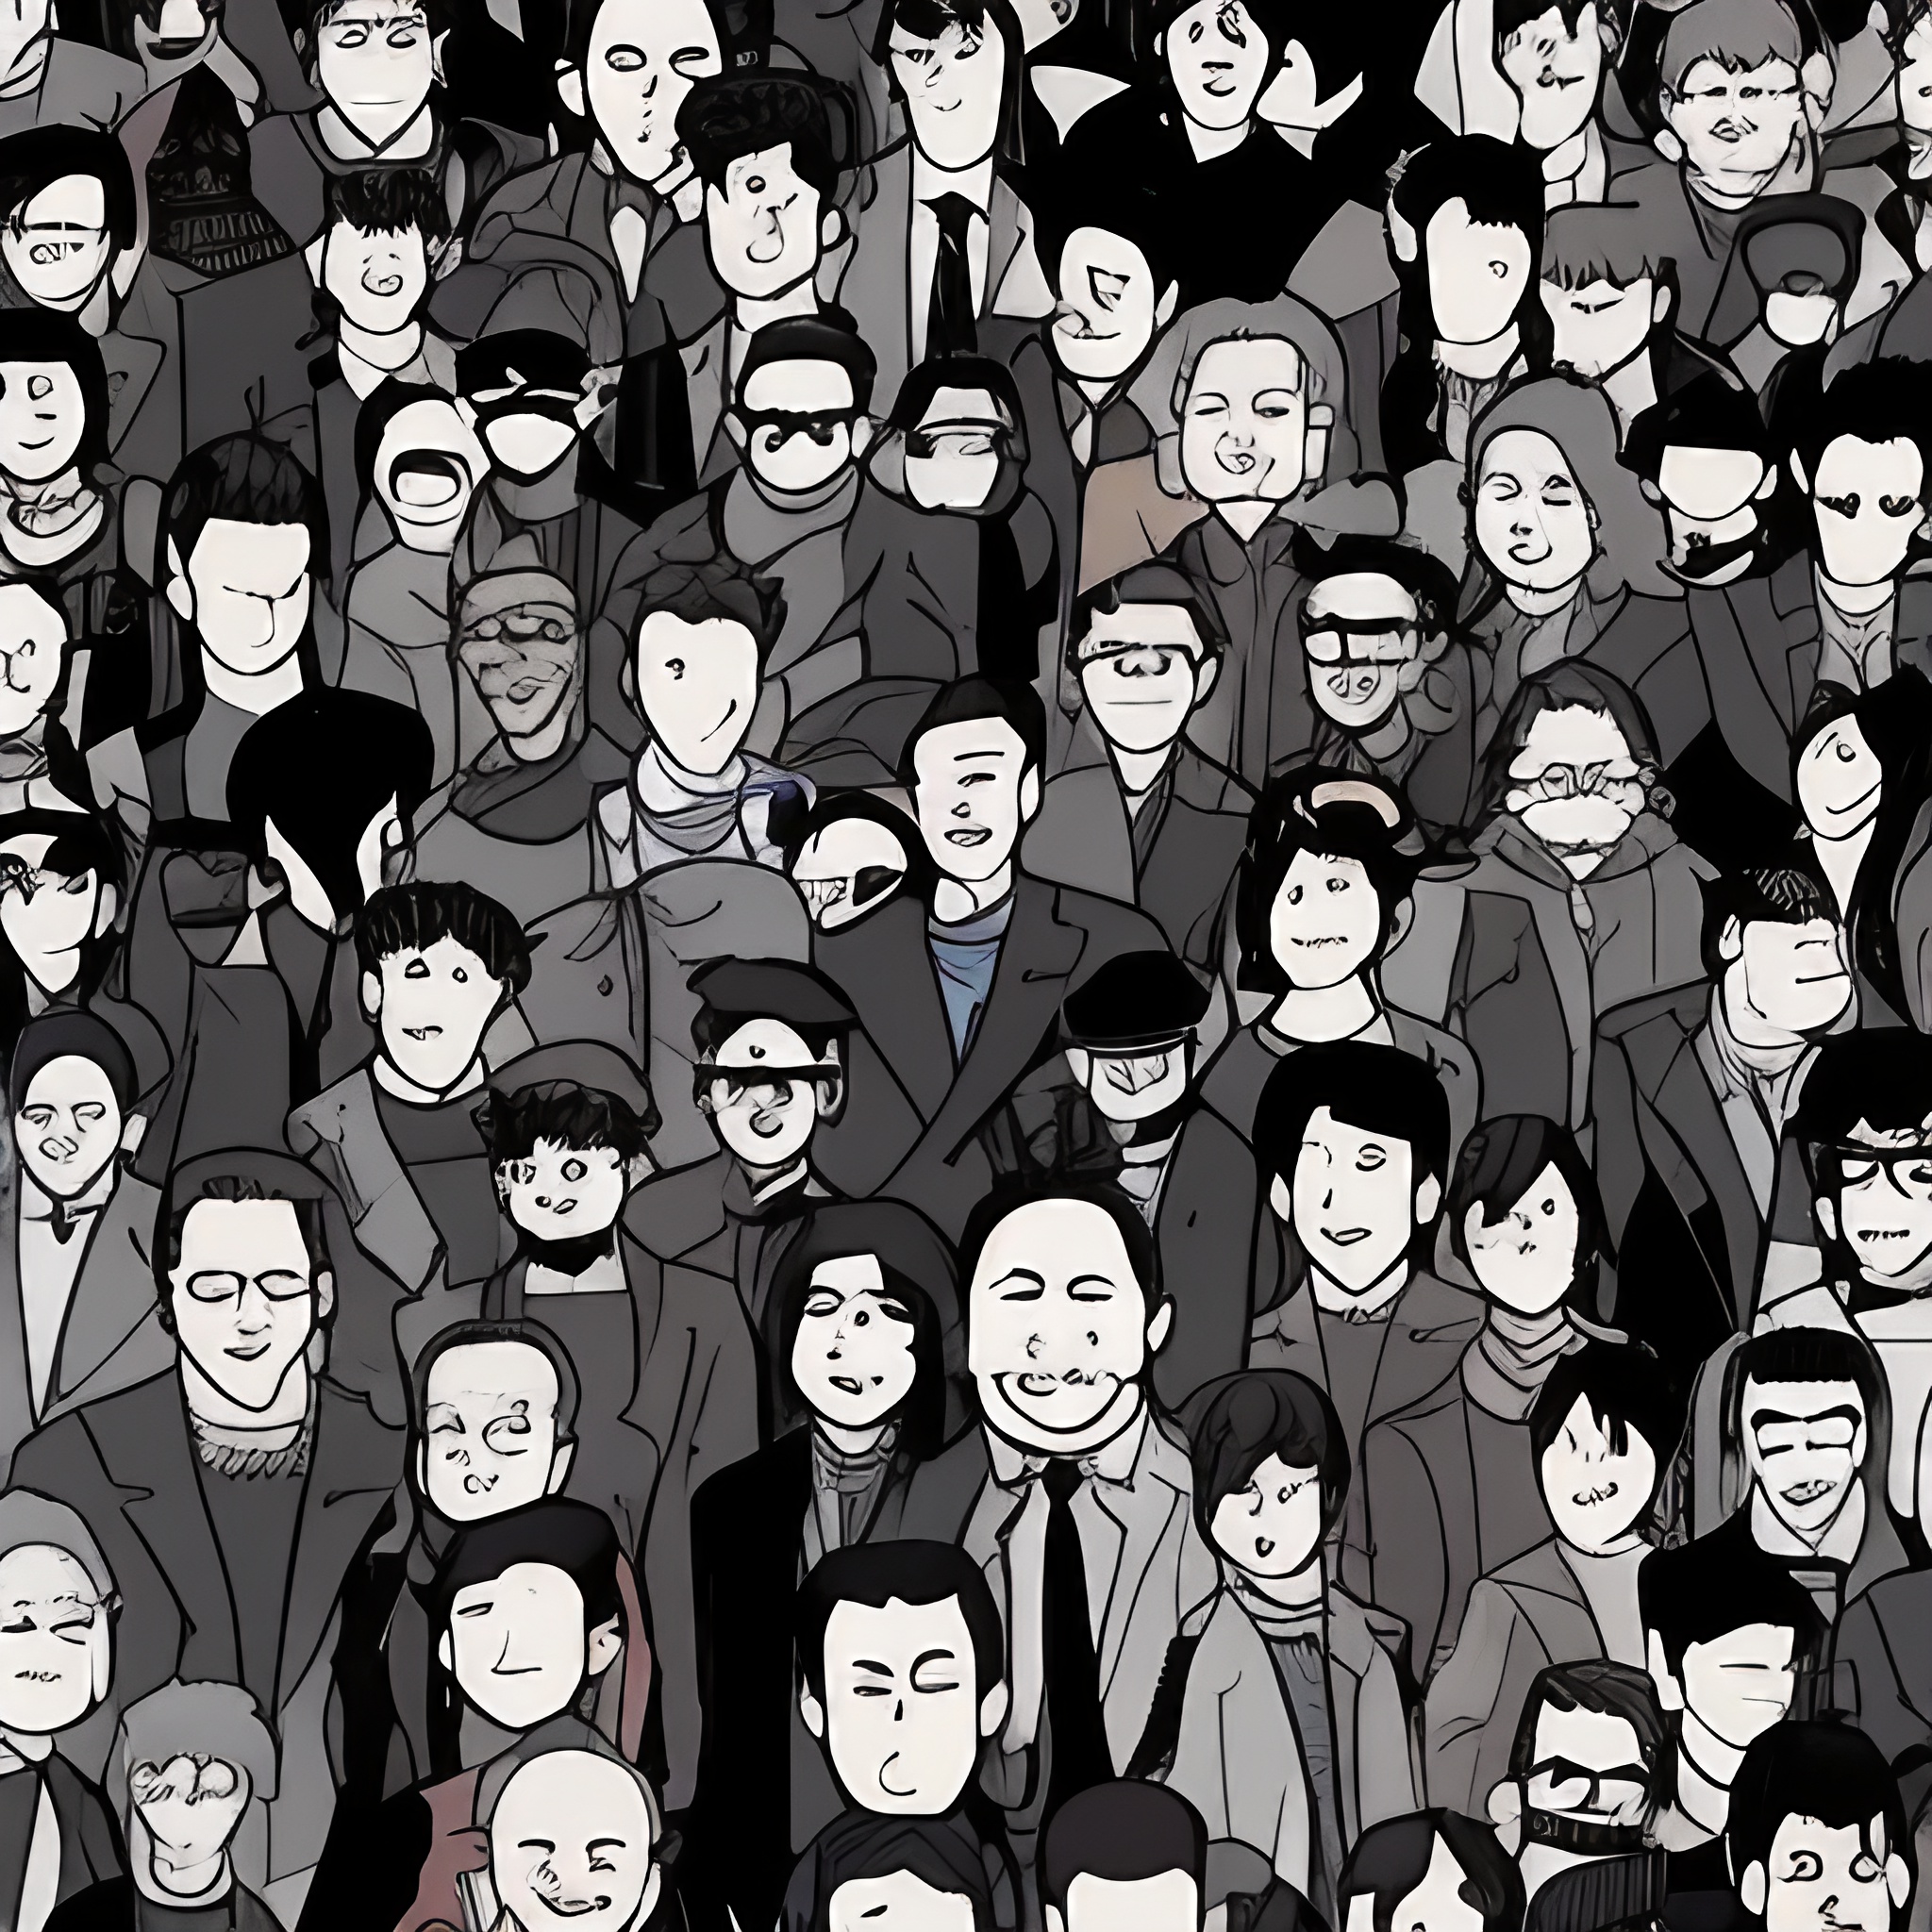 grafika w stylu kreskówki na grafice widać mężczyznę do okoła jest dużo patrzących się na niego ludzi w czarnych płaszczach